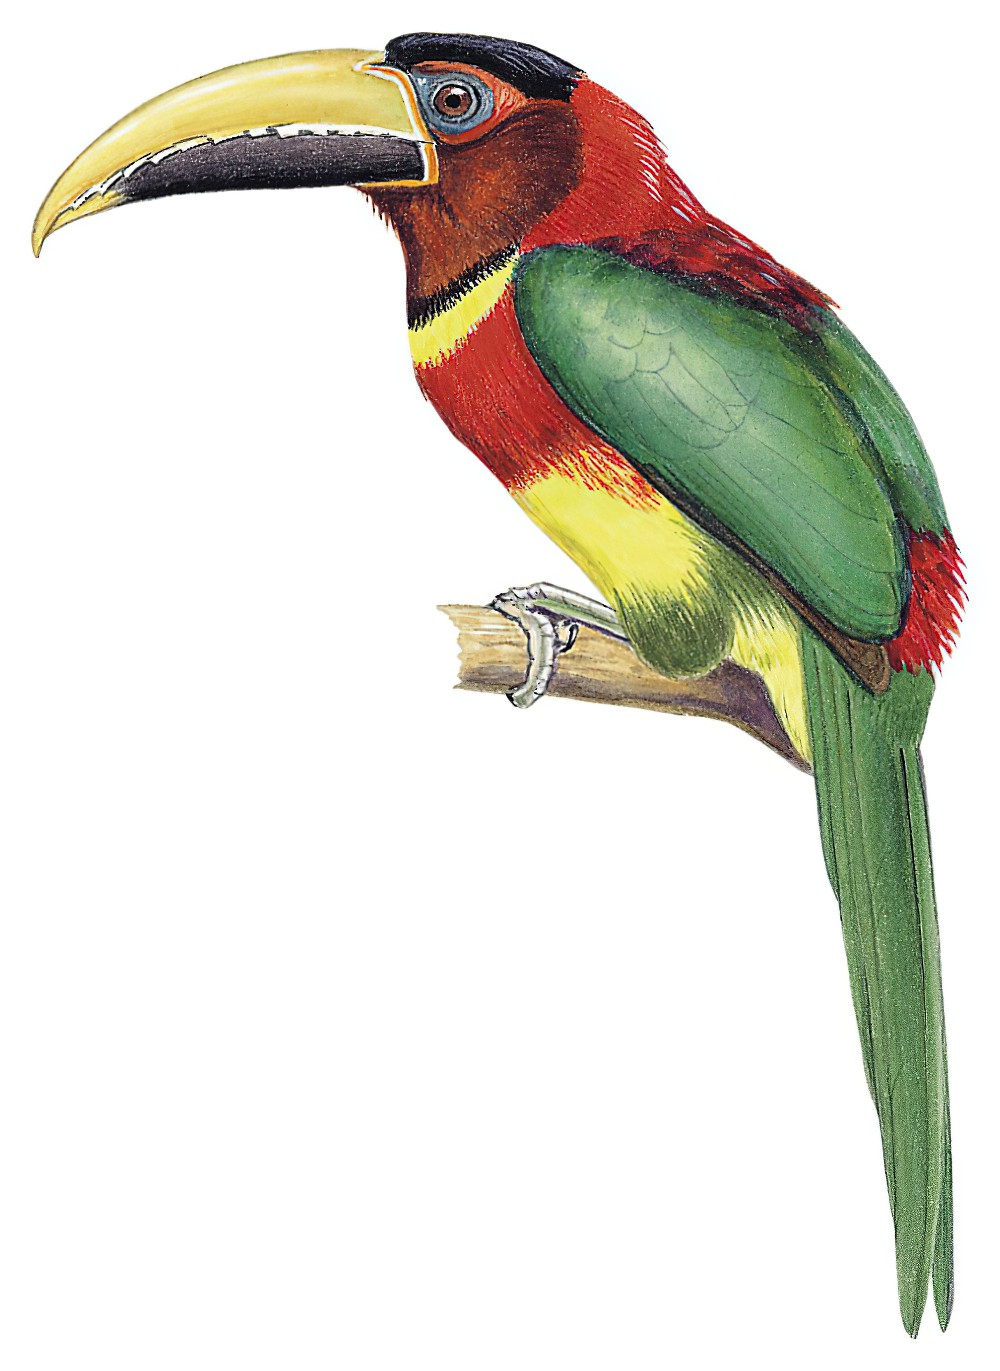 Red-necked Aracari / Pteroglossus bitorquatus